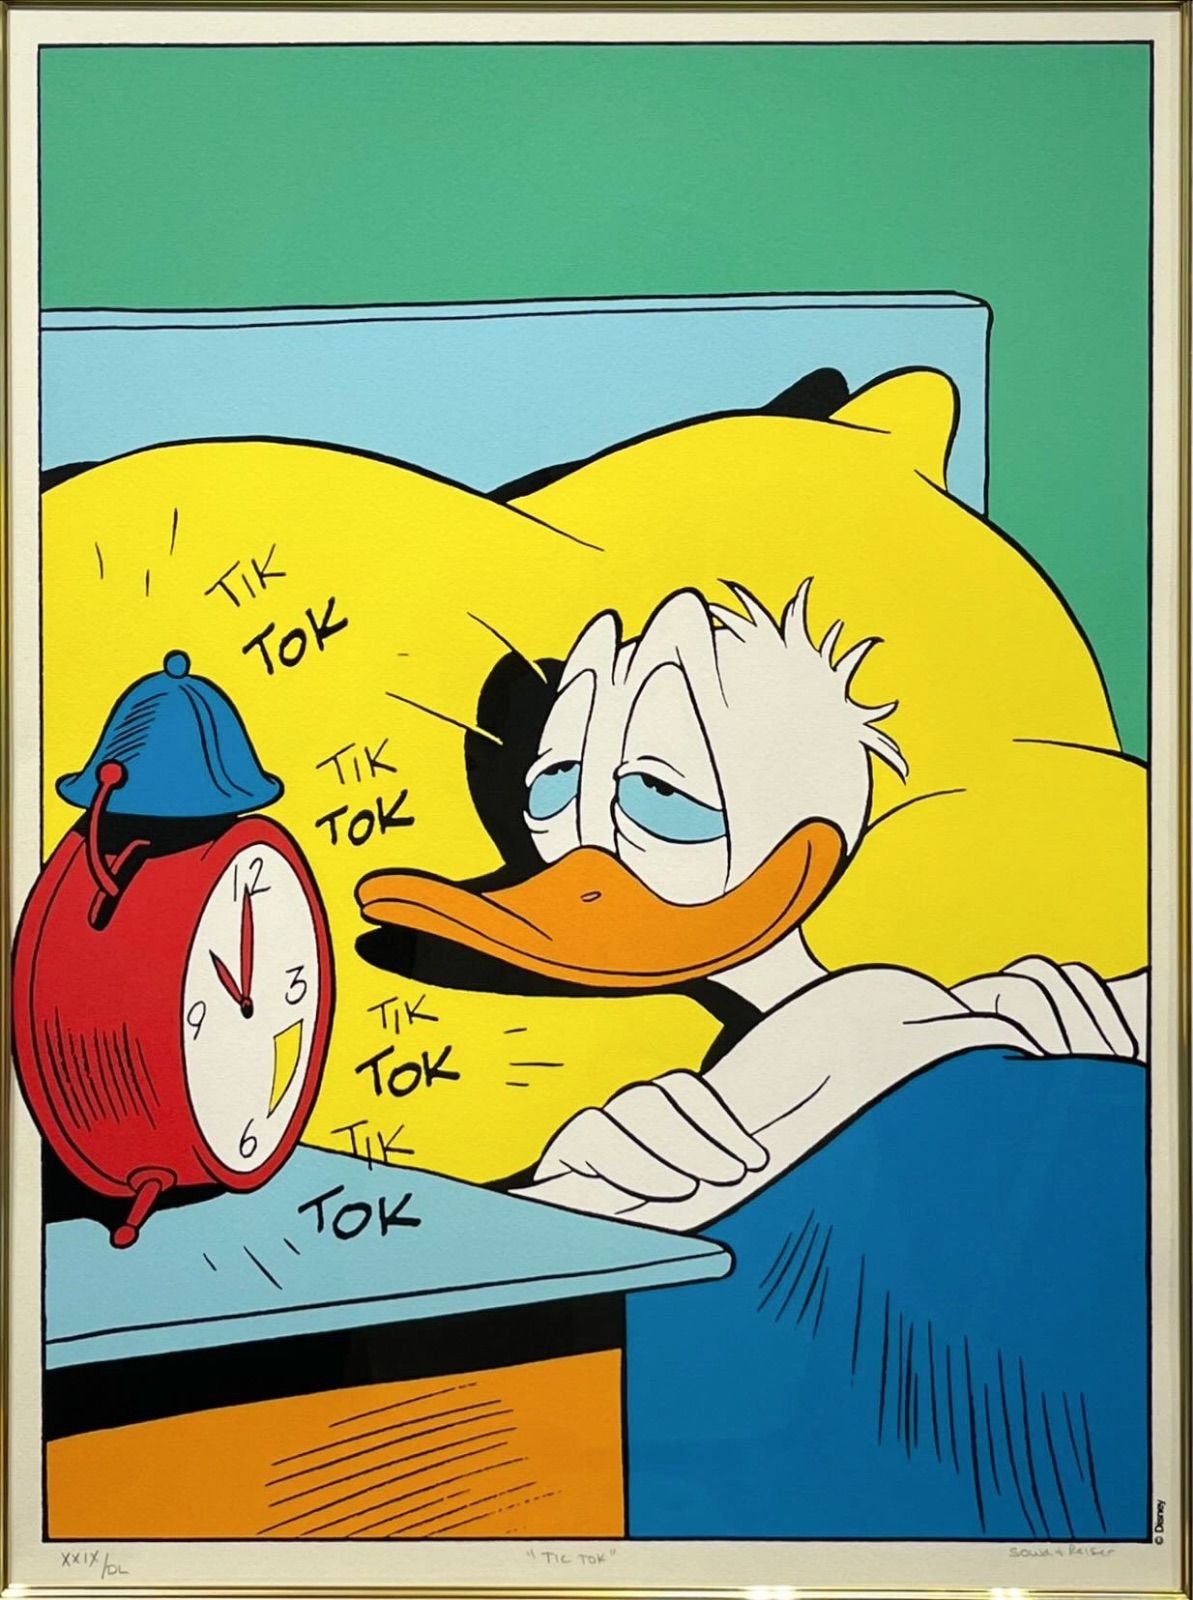 送料無料】SOWA&REISER『TIC TOK』 Donald Duck ドナルドダック ...